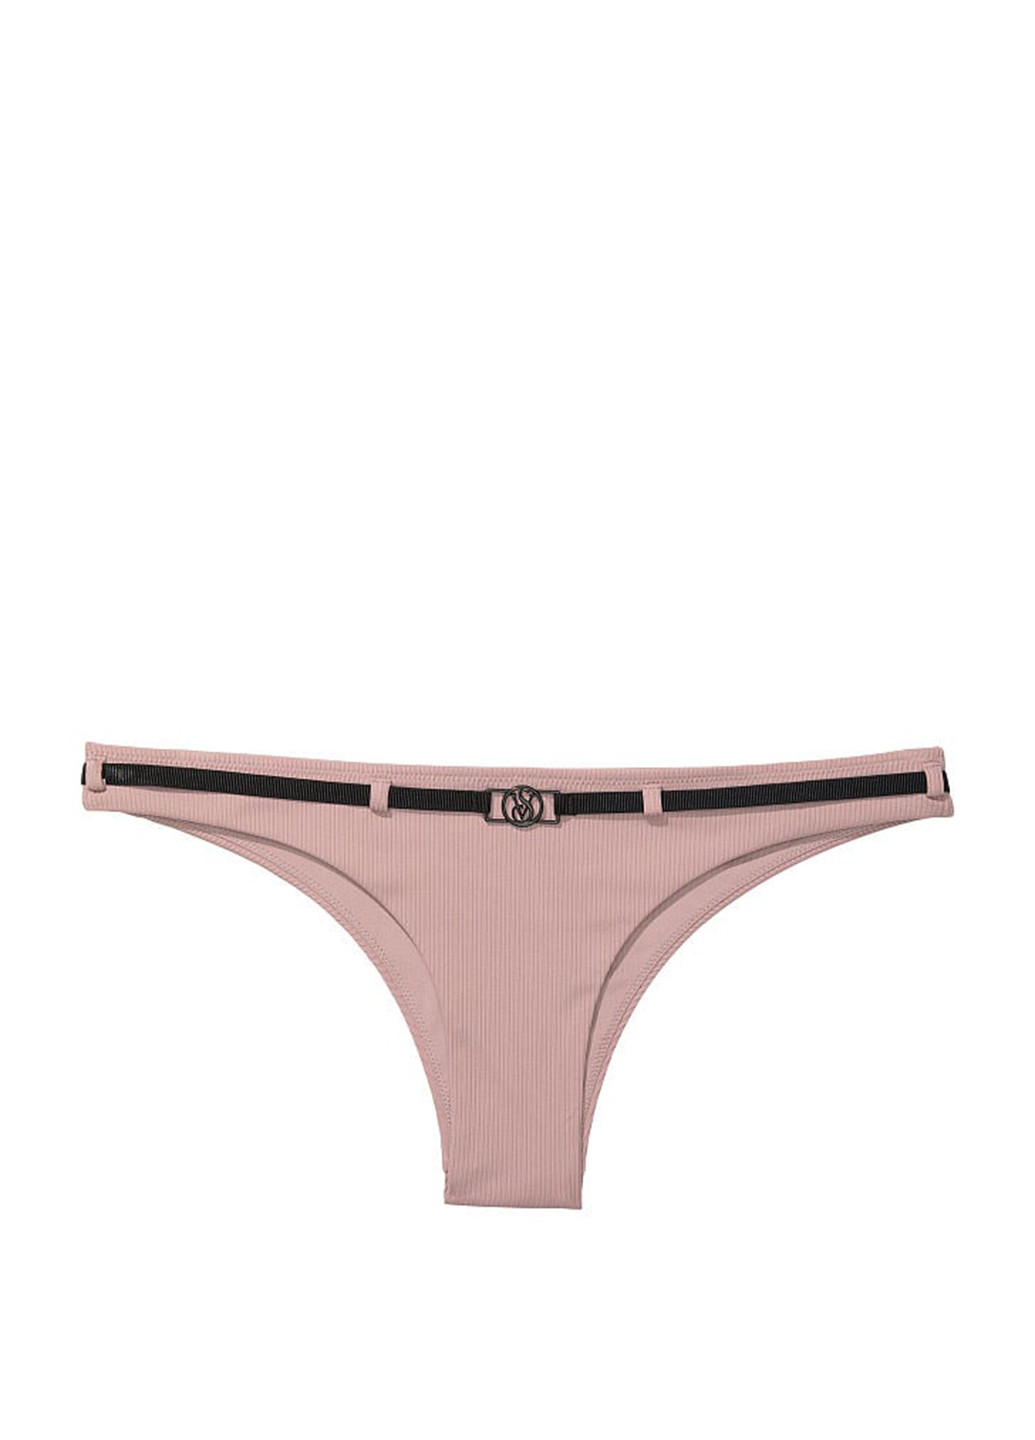 Светло-розовый летний купальник (лиф, трусы) топ, раздельный Victoria's Secret